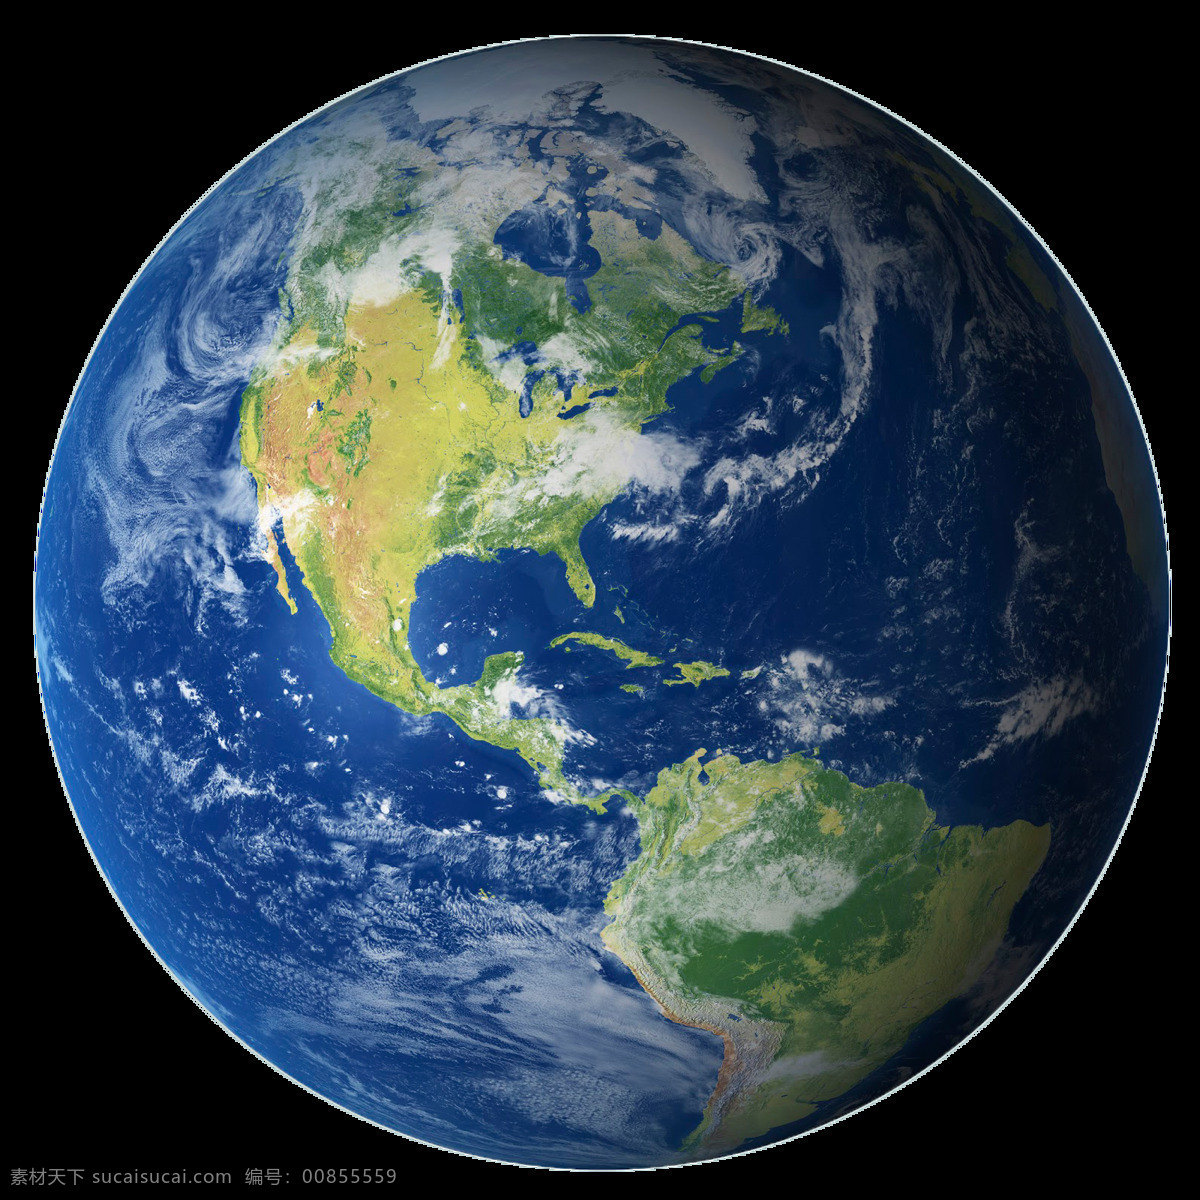 蓝色星球 地球全景 地球全景图 地球图形 earth 星空 星际 宇宙 宇宙探测 天文 天文探测 装饰